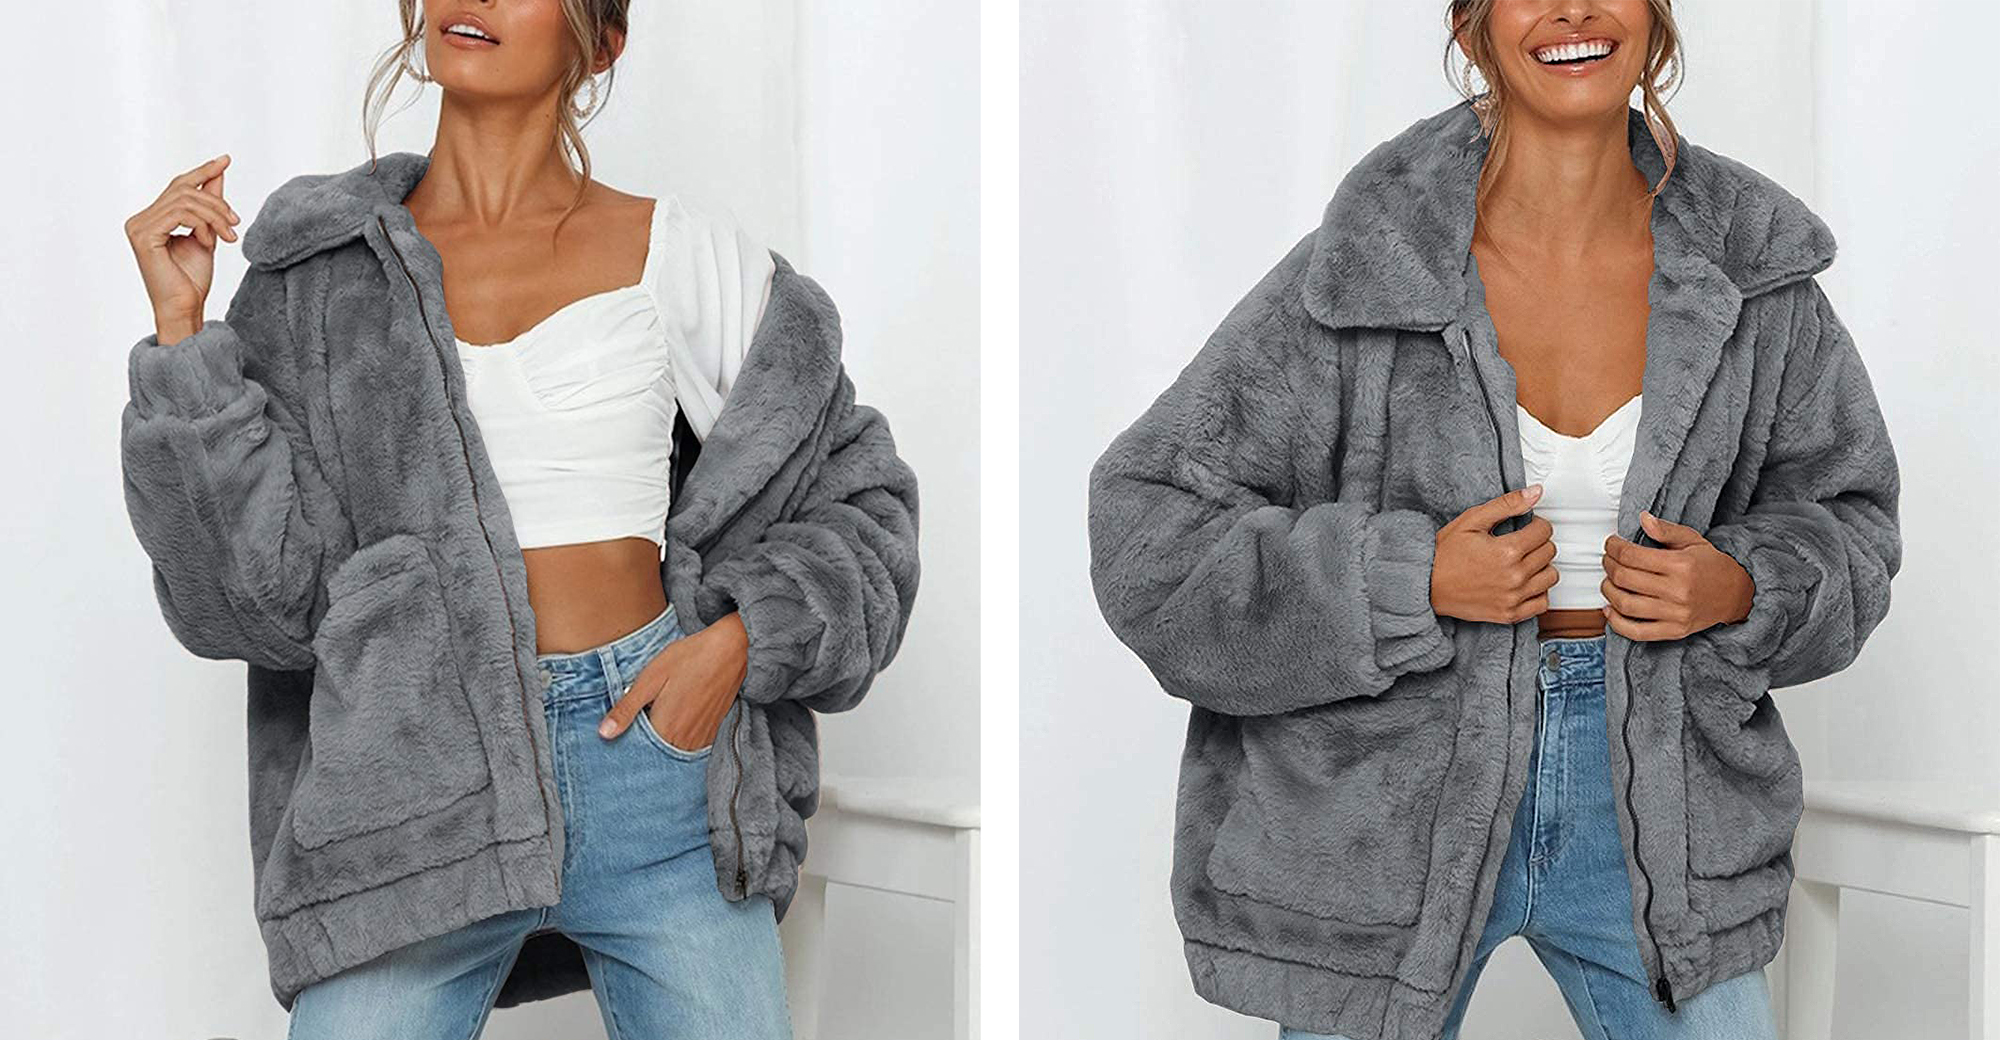 MEROKEETY Womens Long Sleeve Faux Fur Lapel Coat Zip Up Sherpa Pockets Jackets Outwear 